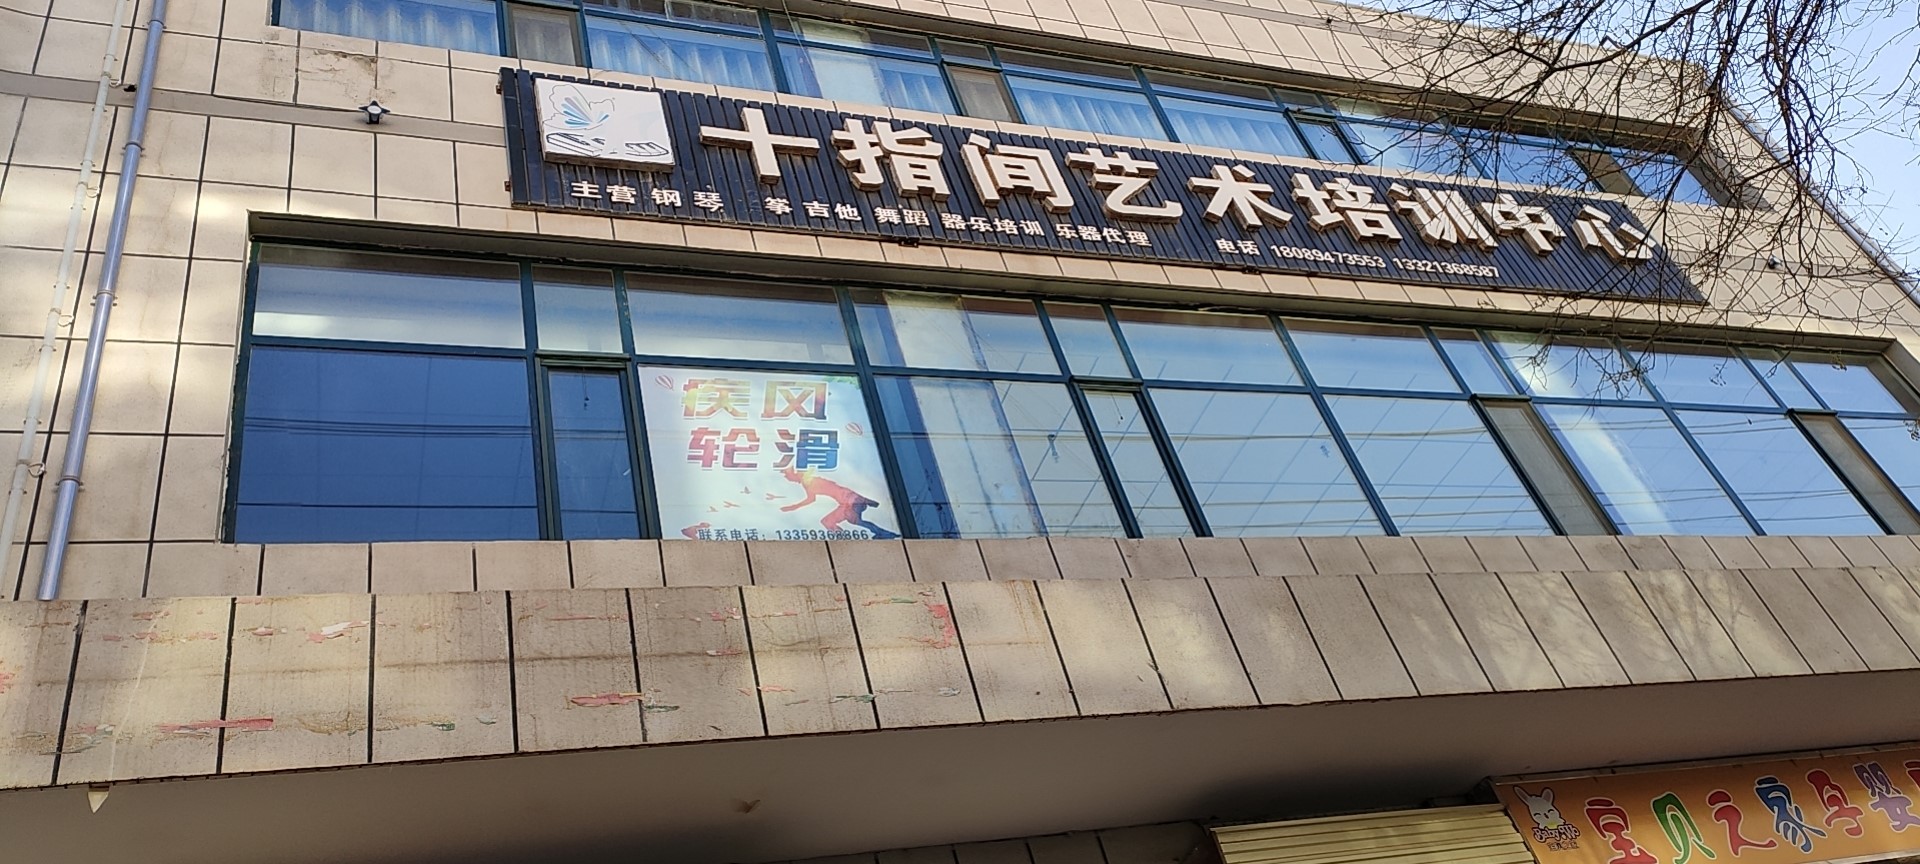 临泽县东关街816号邮政公司综合楼三楼